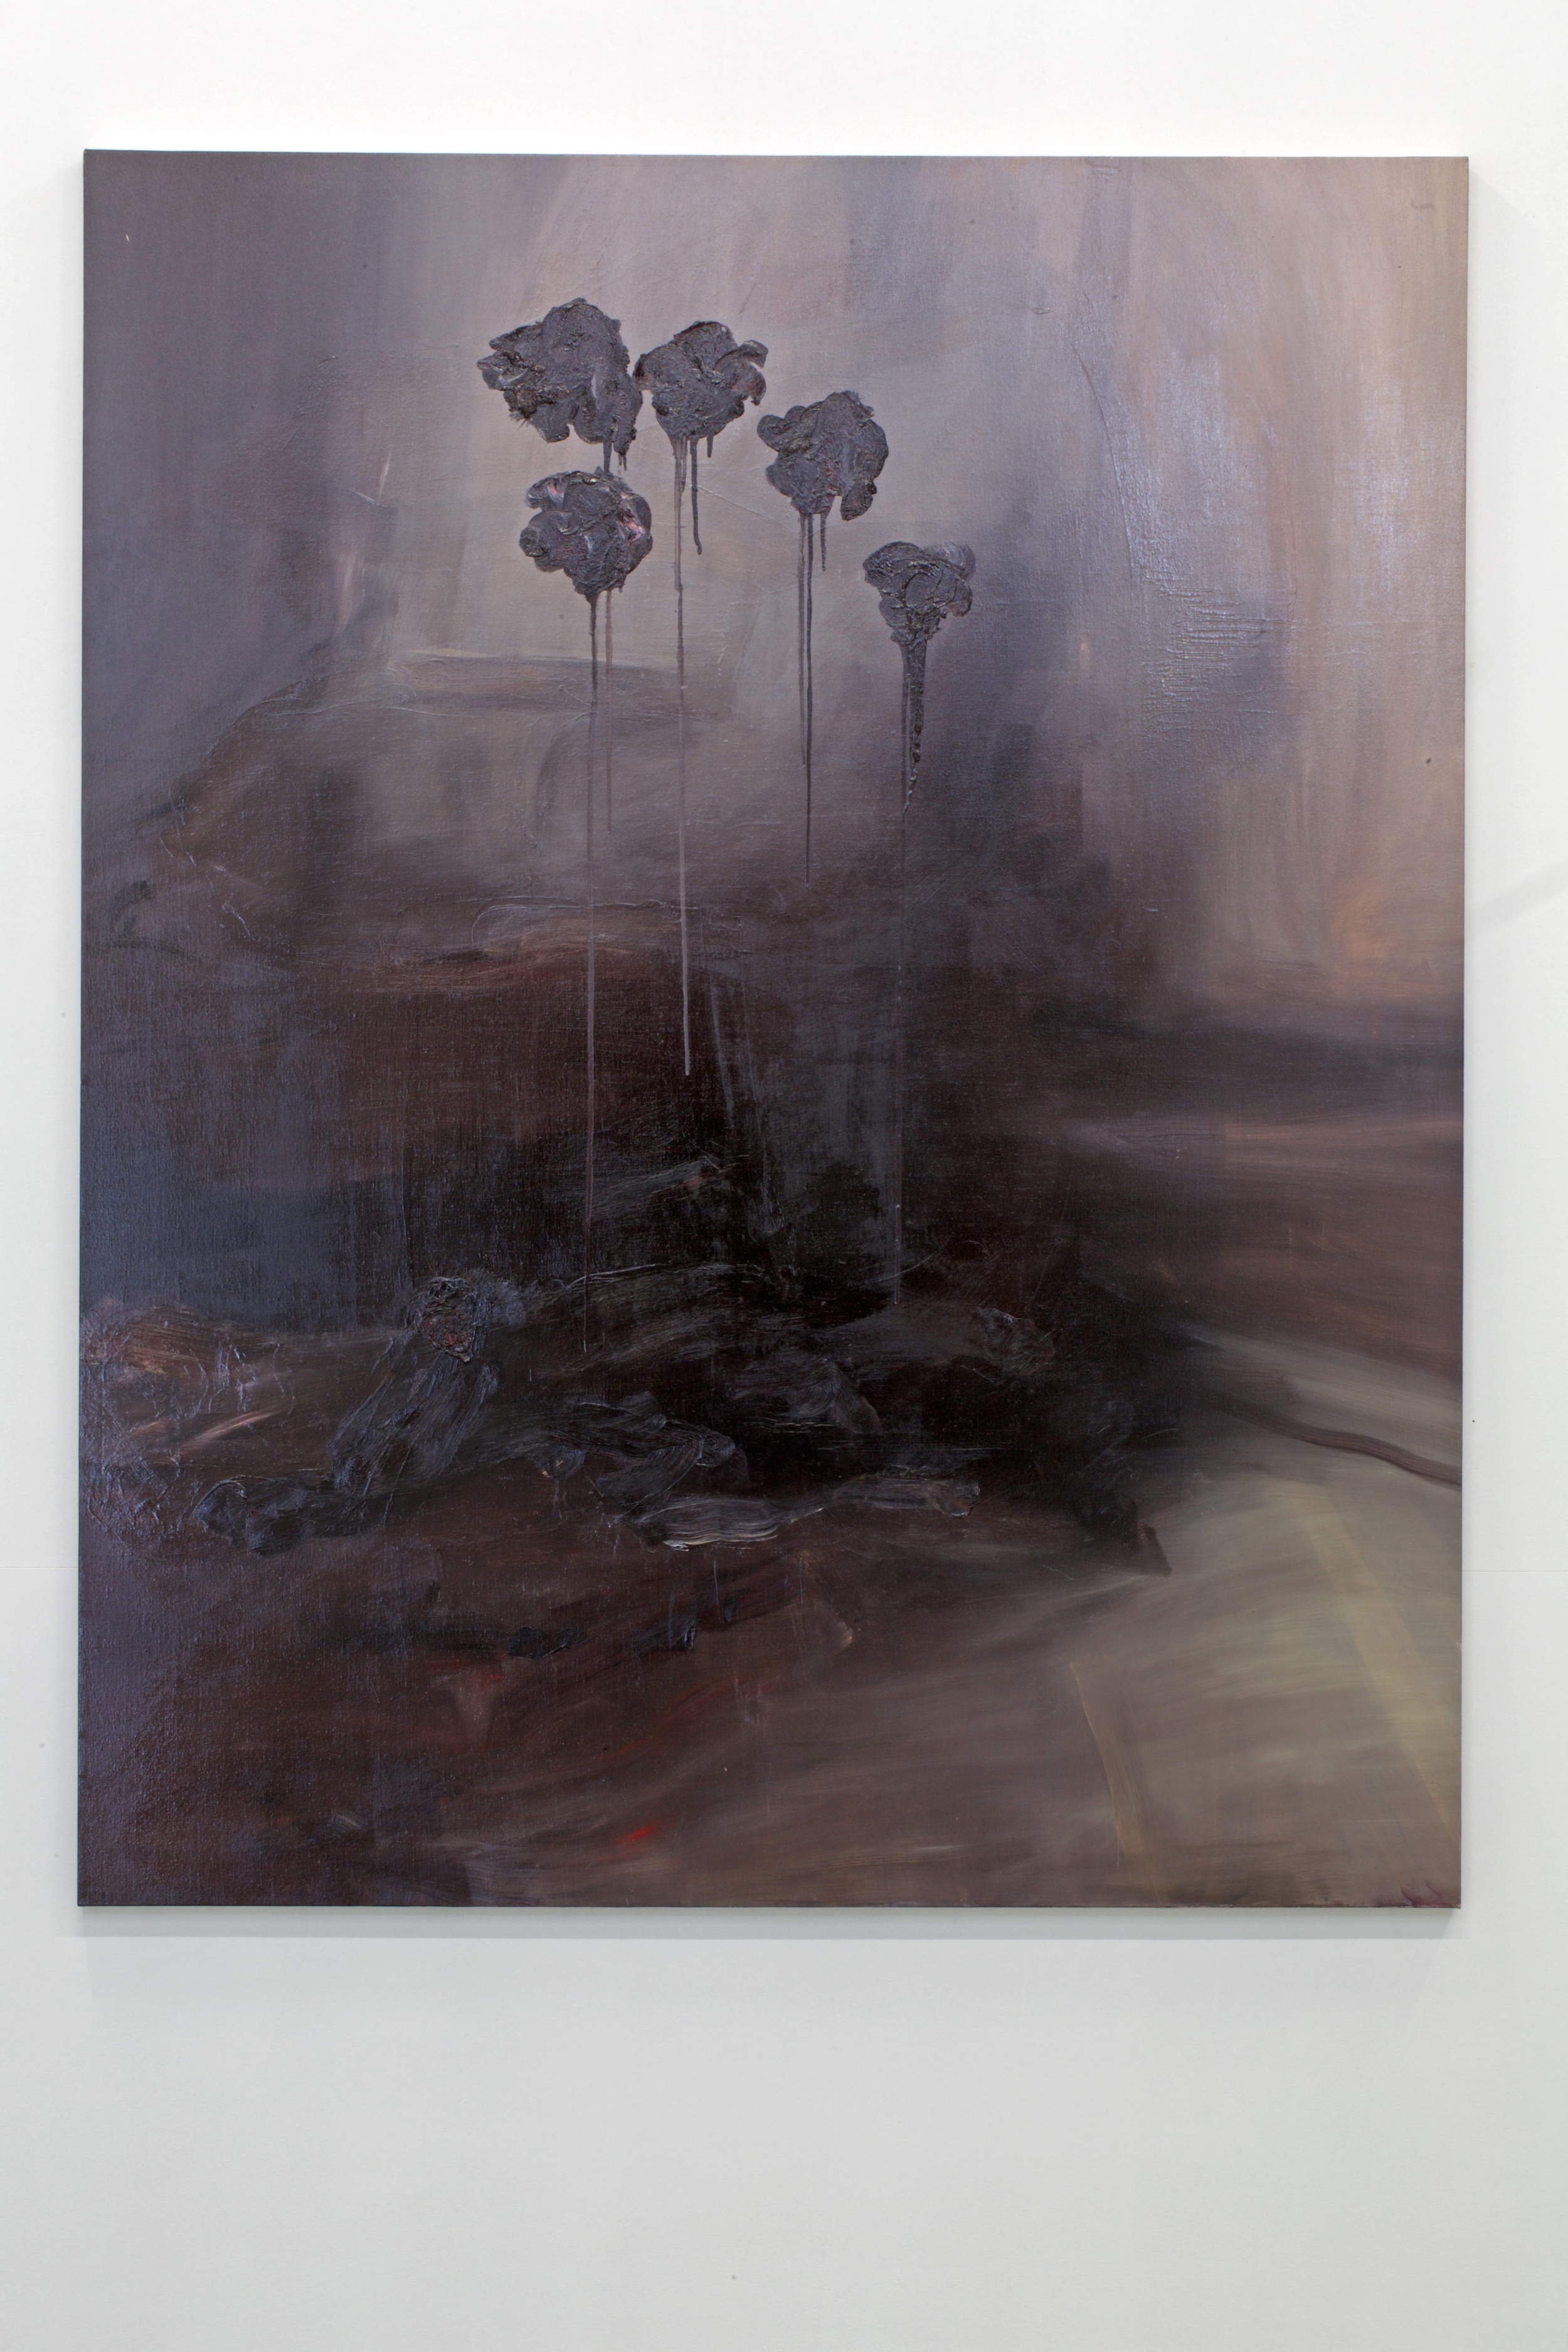  Rudy Cremonini, famiglia dei fiori, 2014 oil on canvas 189 x 150 cm 